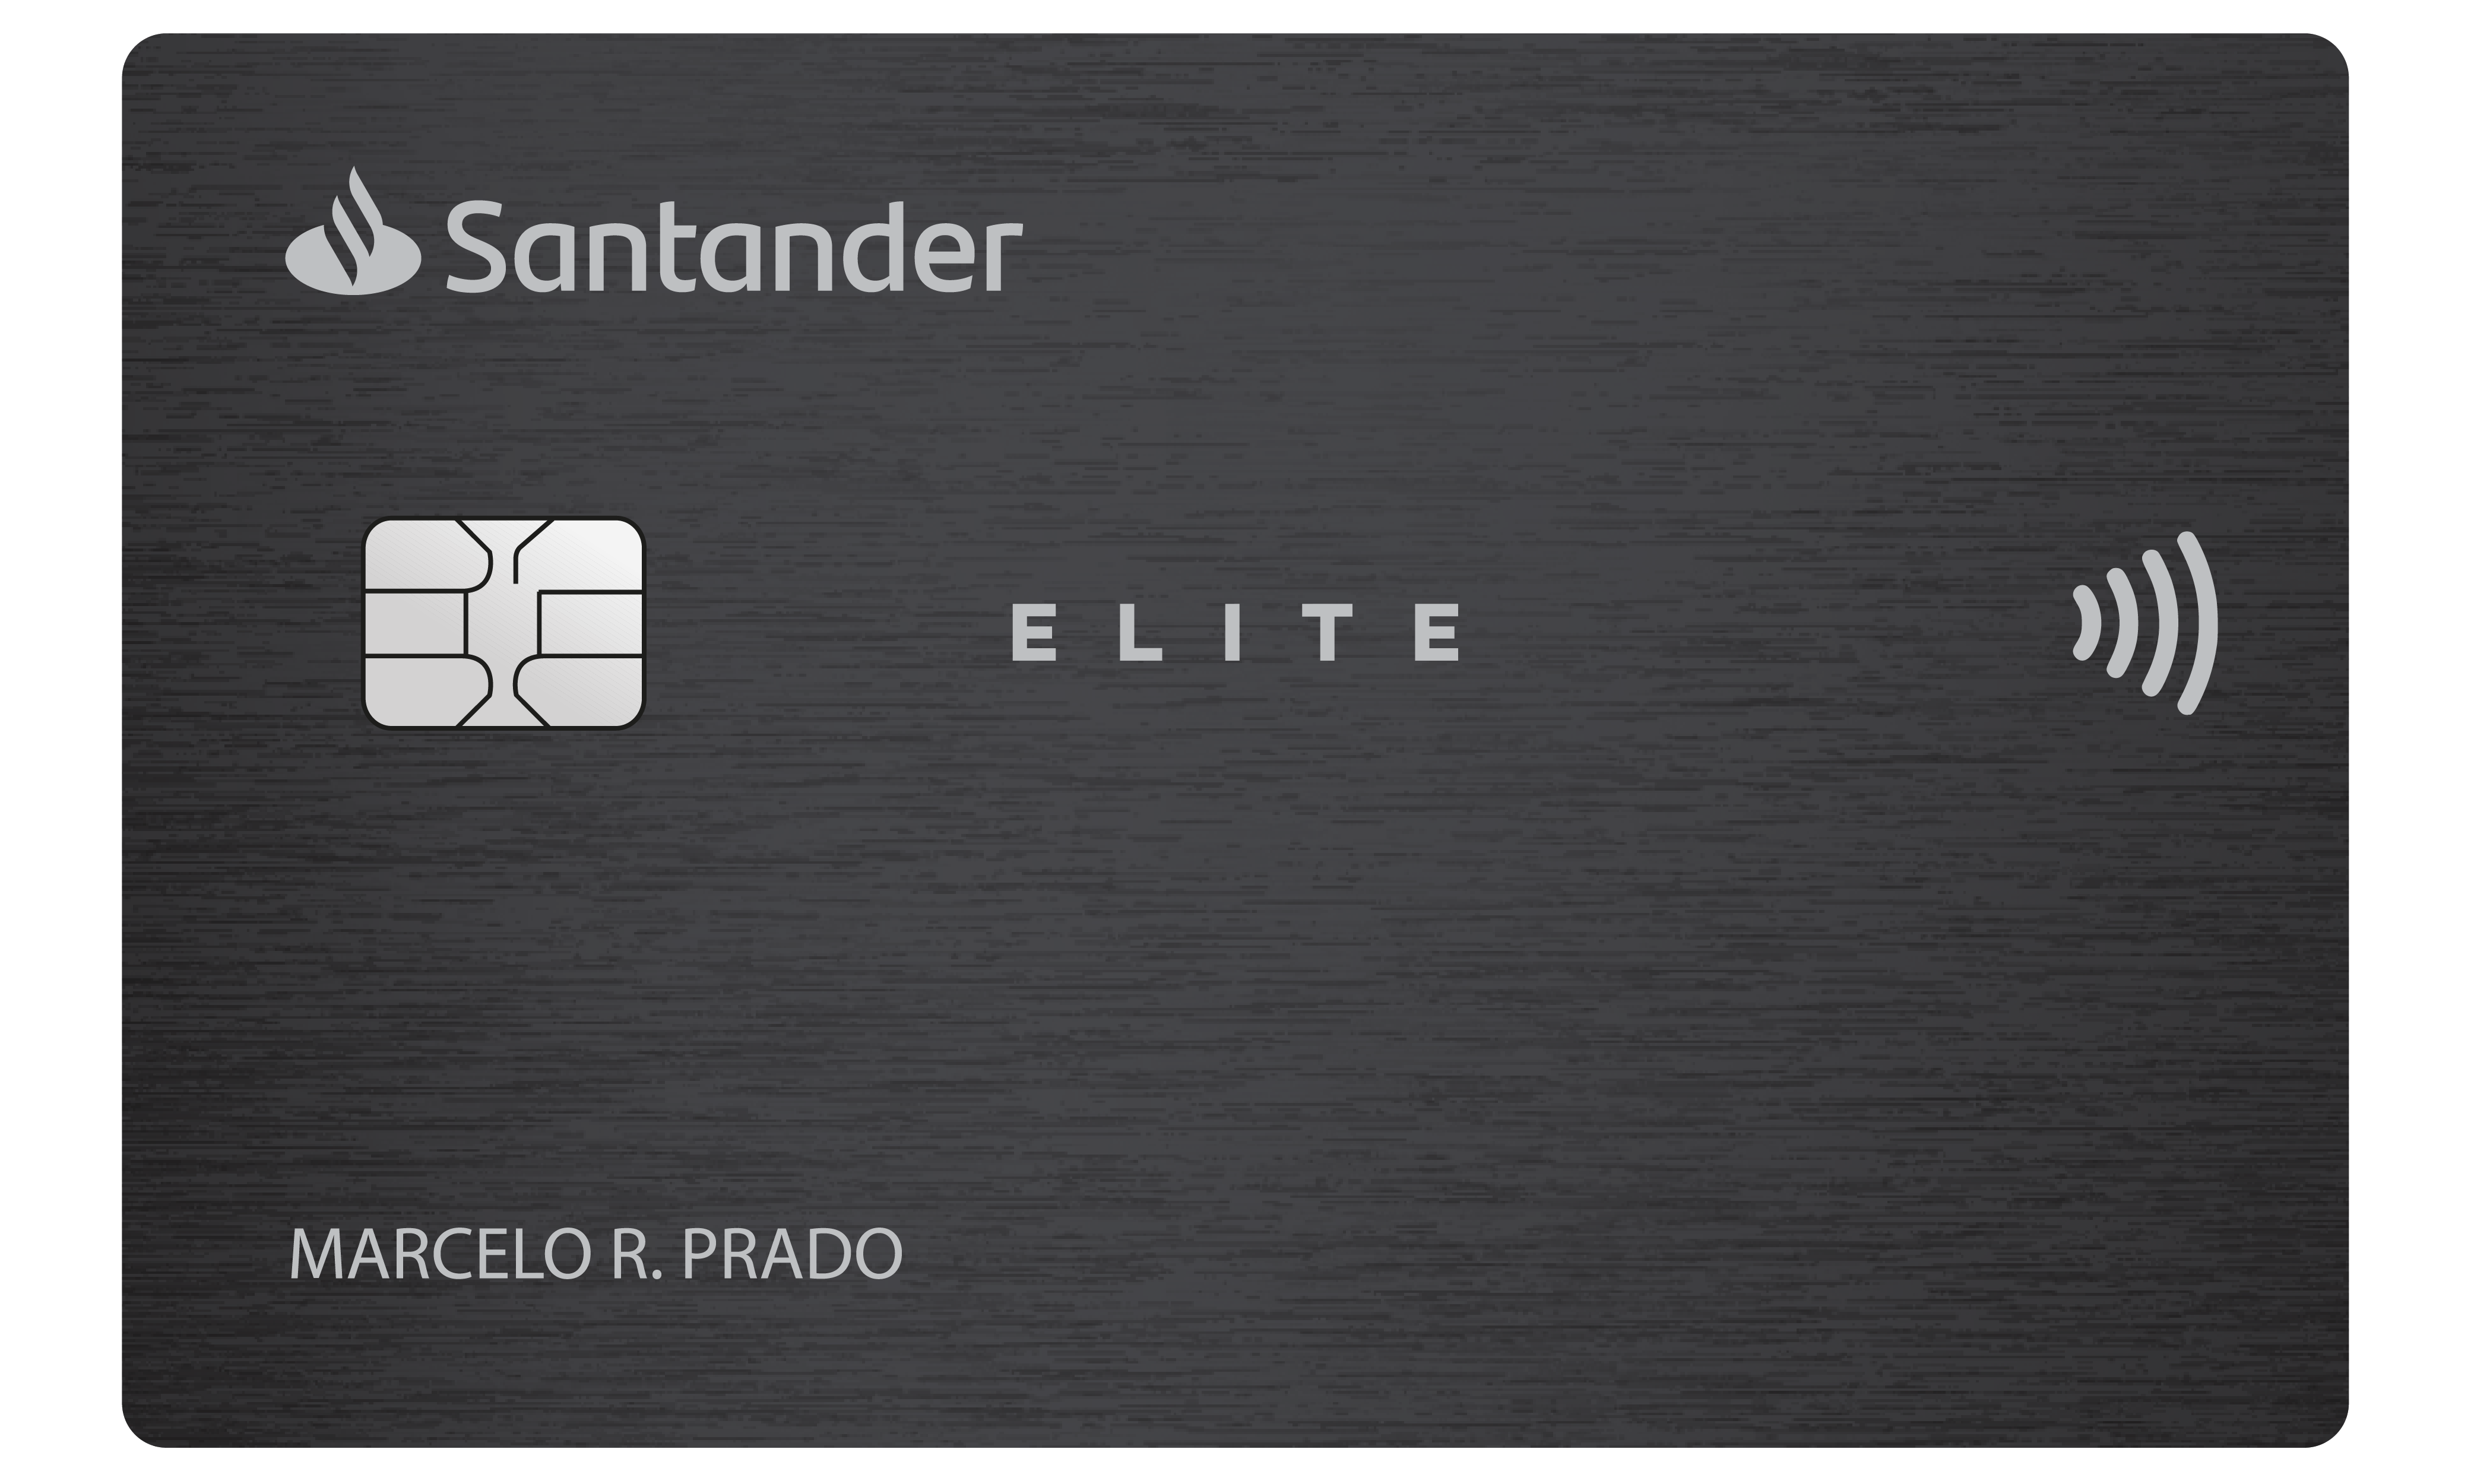 Cartão Santander Elite Platinum